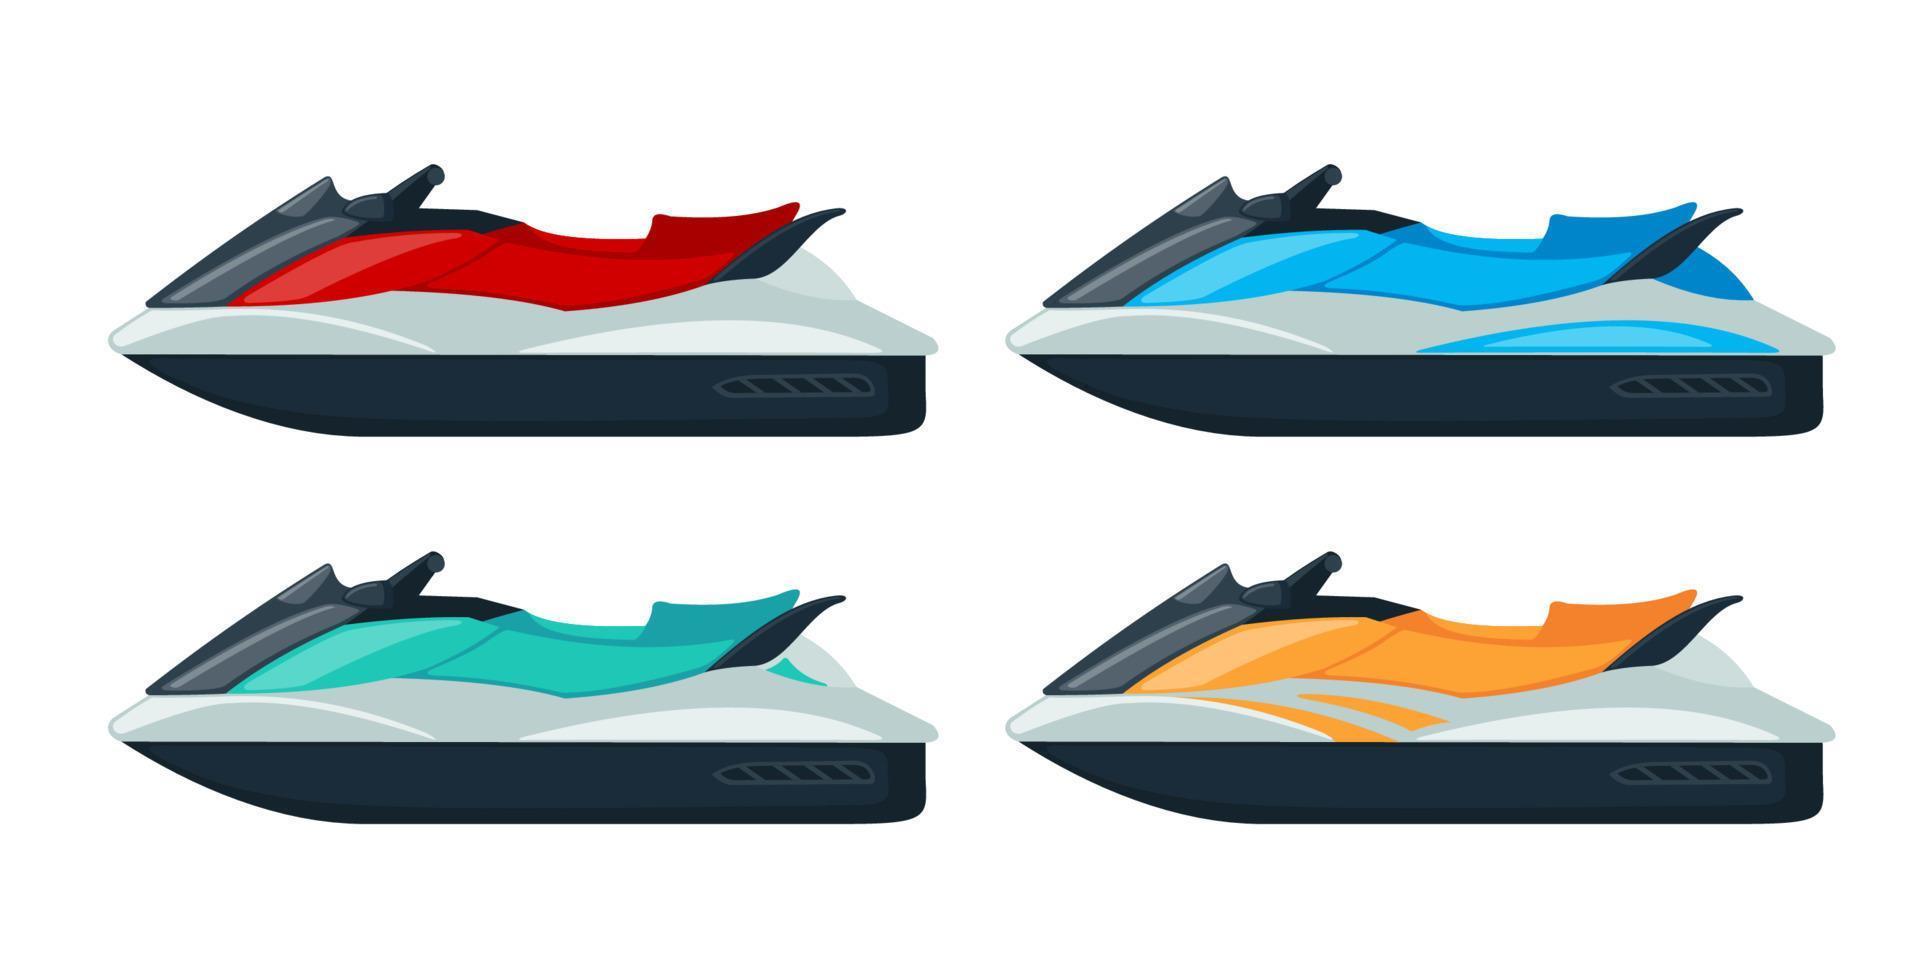 Farbige Jet-Scooter-Icons im flachen Stil isoliert auf weißem Hintergrund. Cartoon-Wasserfahrrad. Vektor-Illustration. vektor